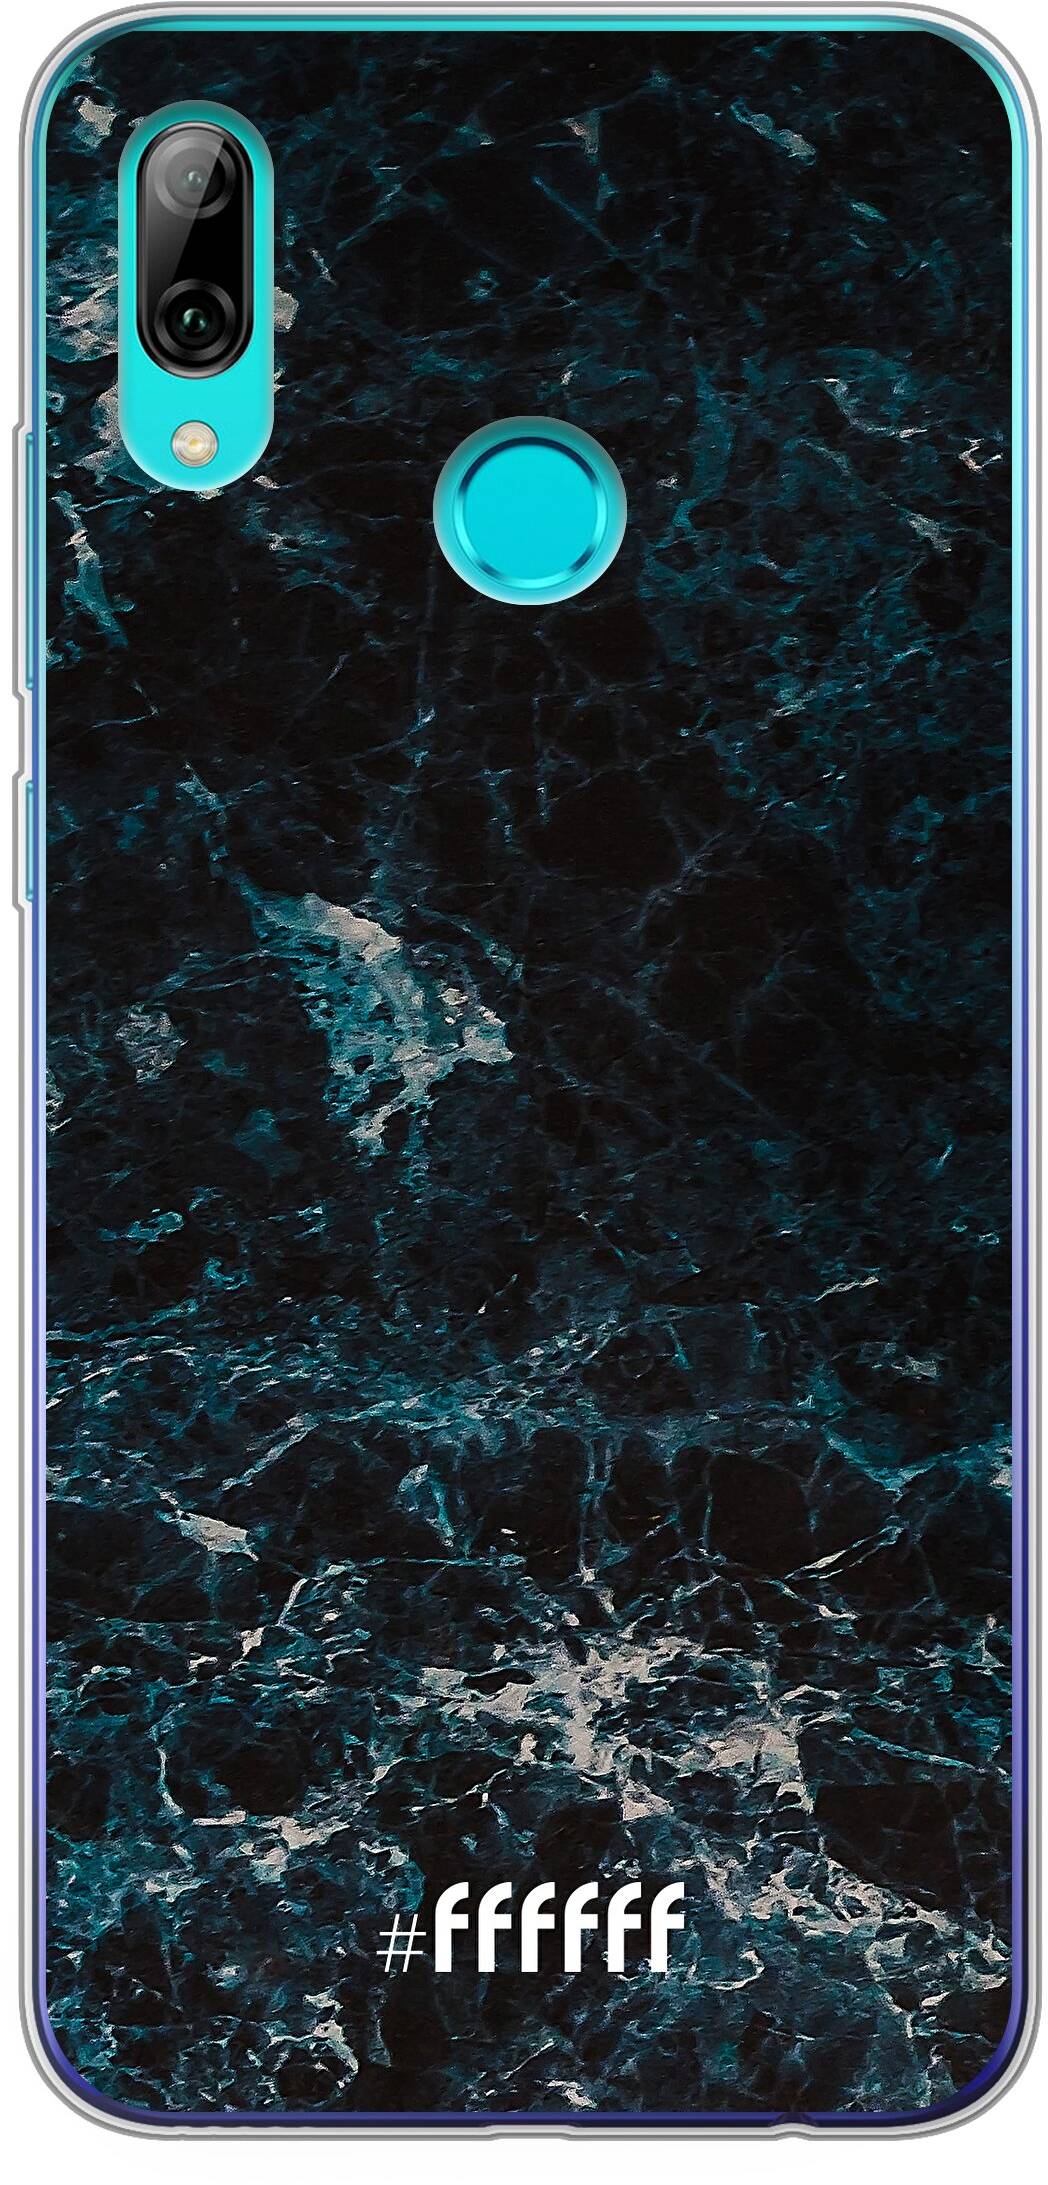 Dark Blue Marble P Smart (2019)